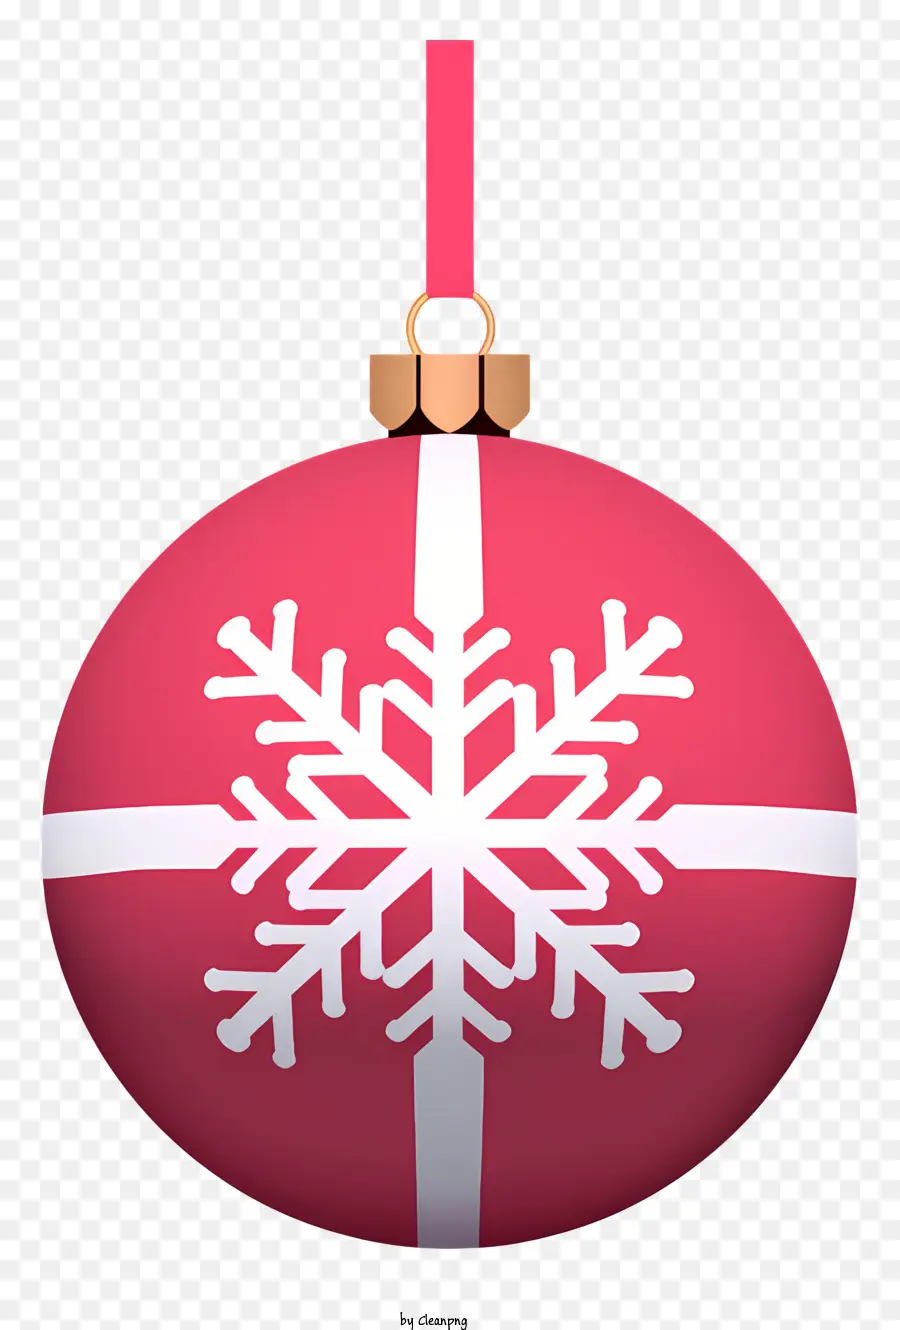 Trang trí giáng sinh - Trang trí Giáng sinh đỏ lễ hội với thiết kế bông tuyết